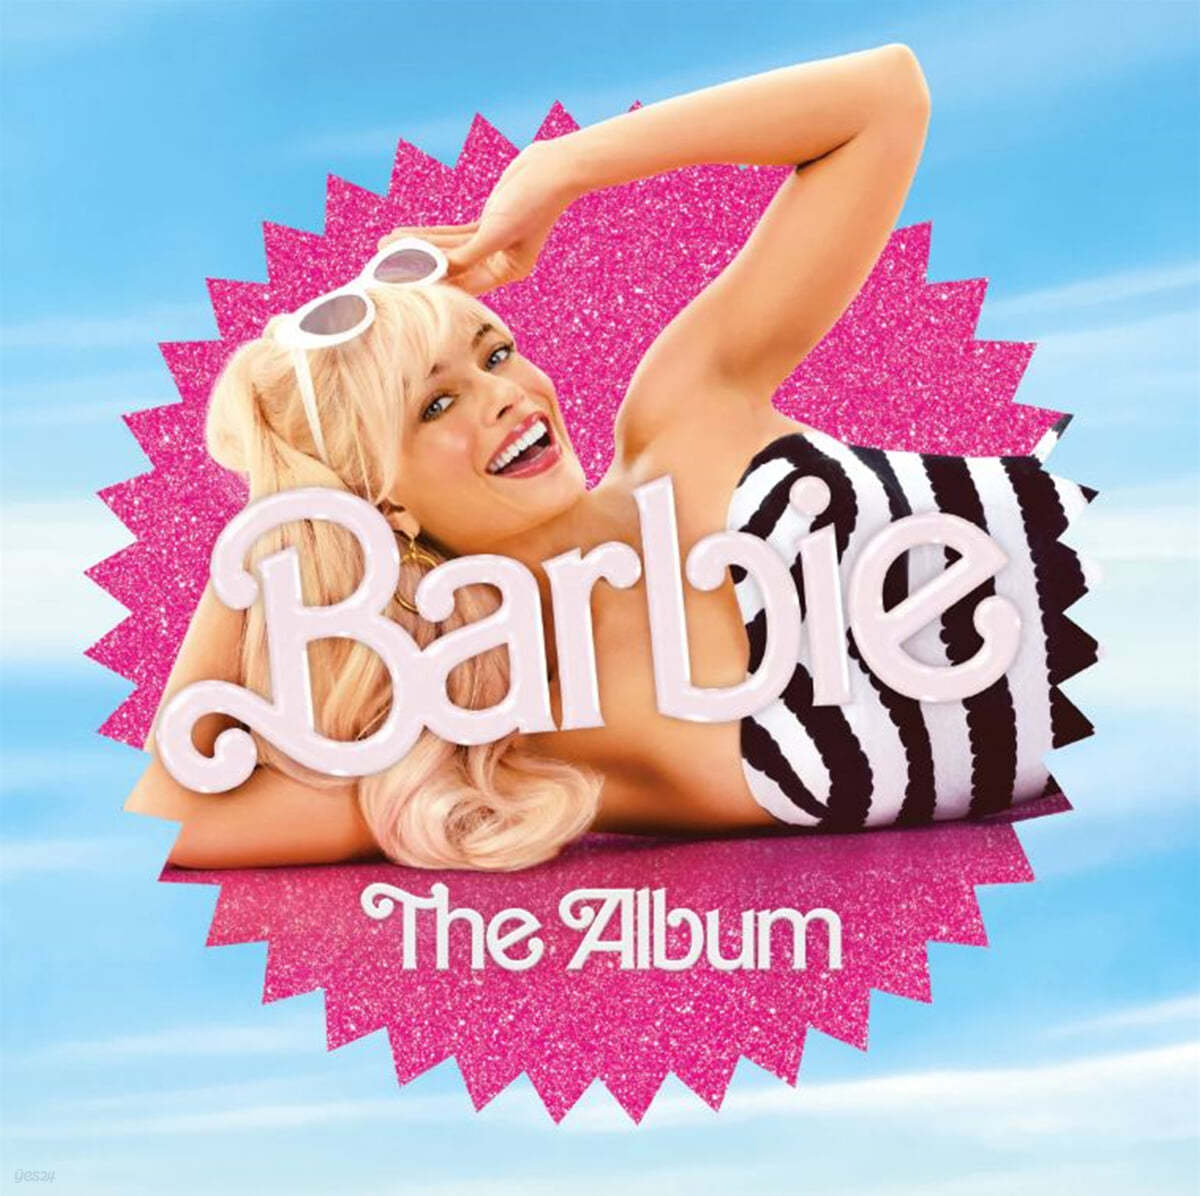 바비 영화음악 (Barbie The Album OST) 